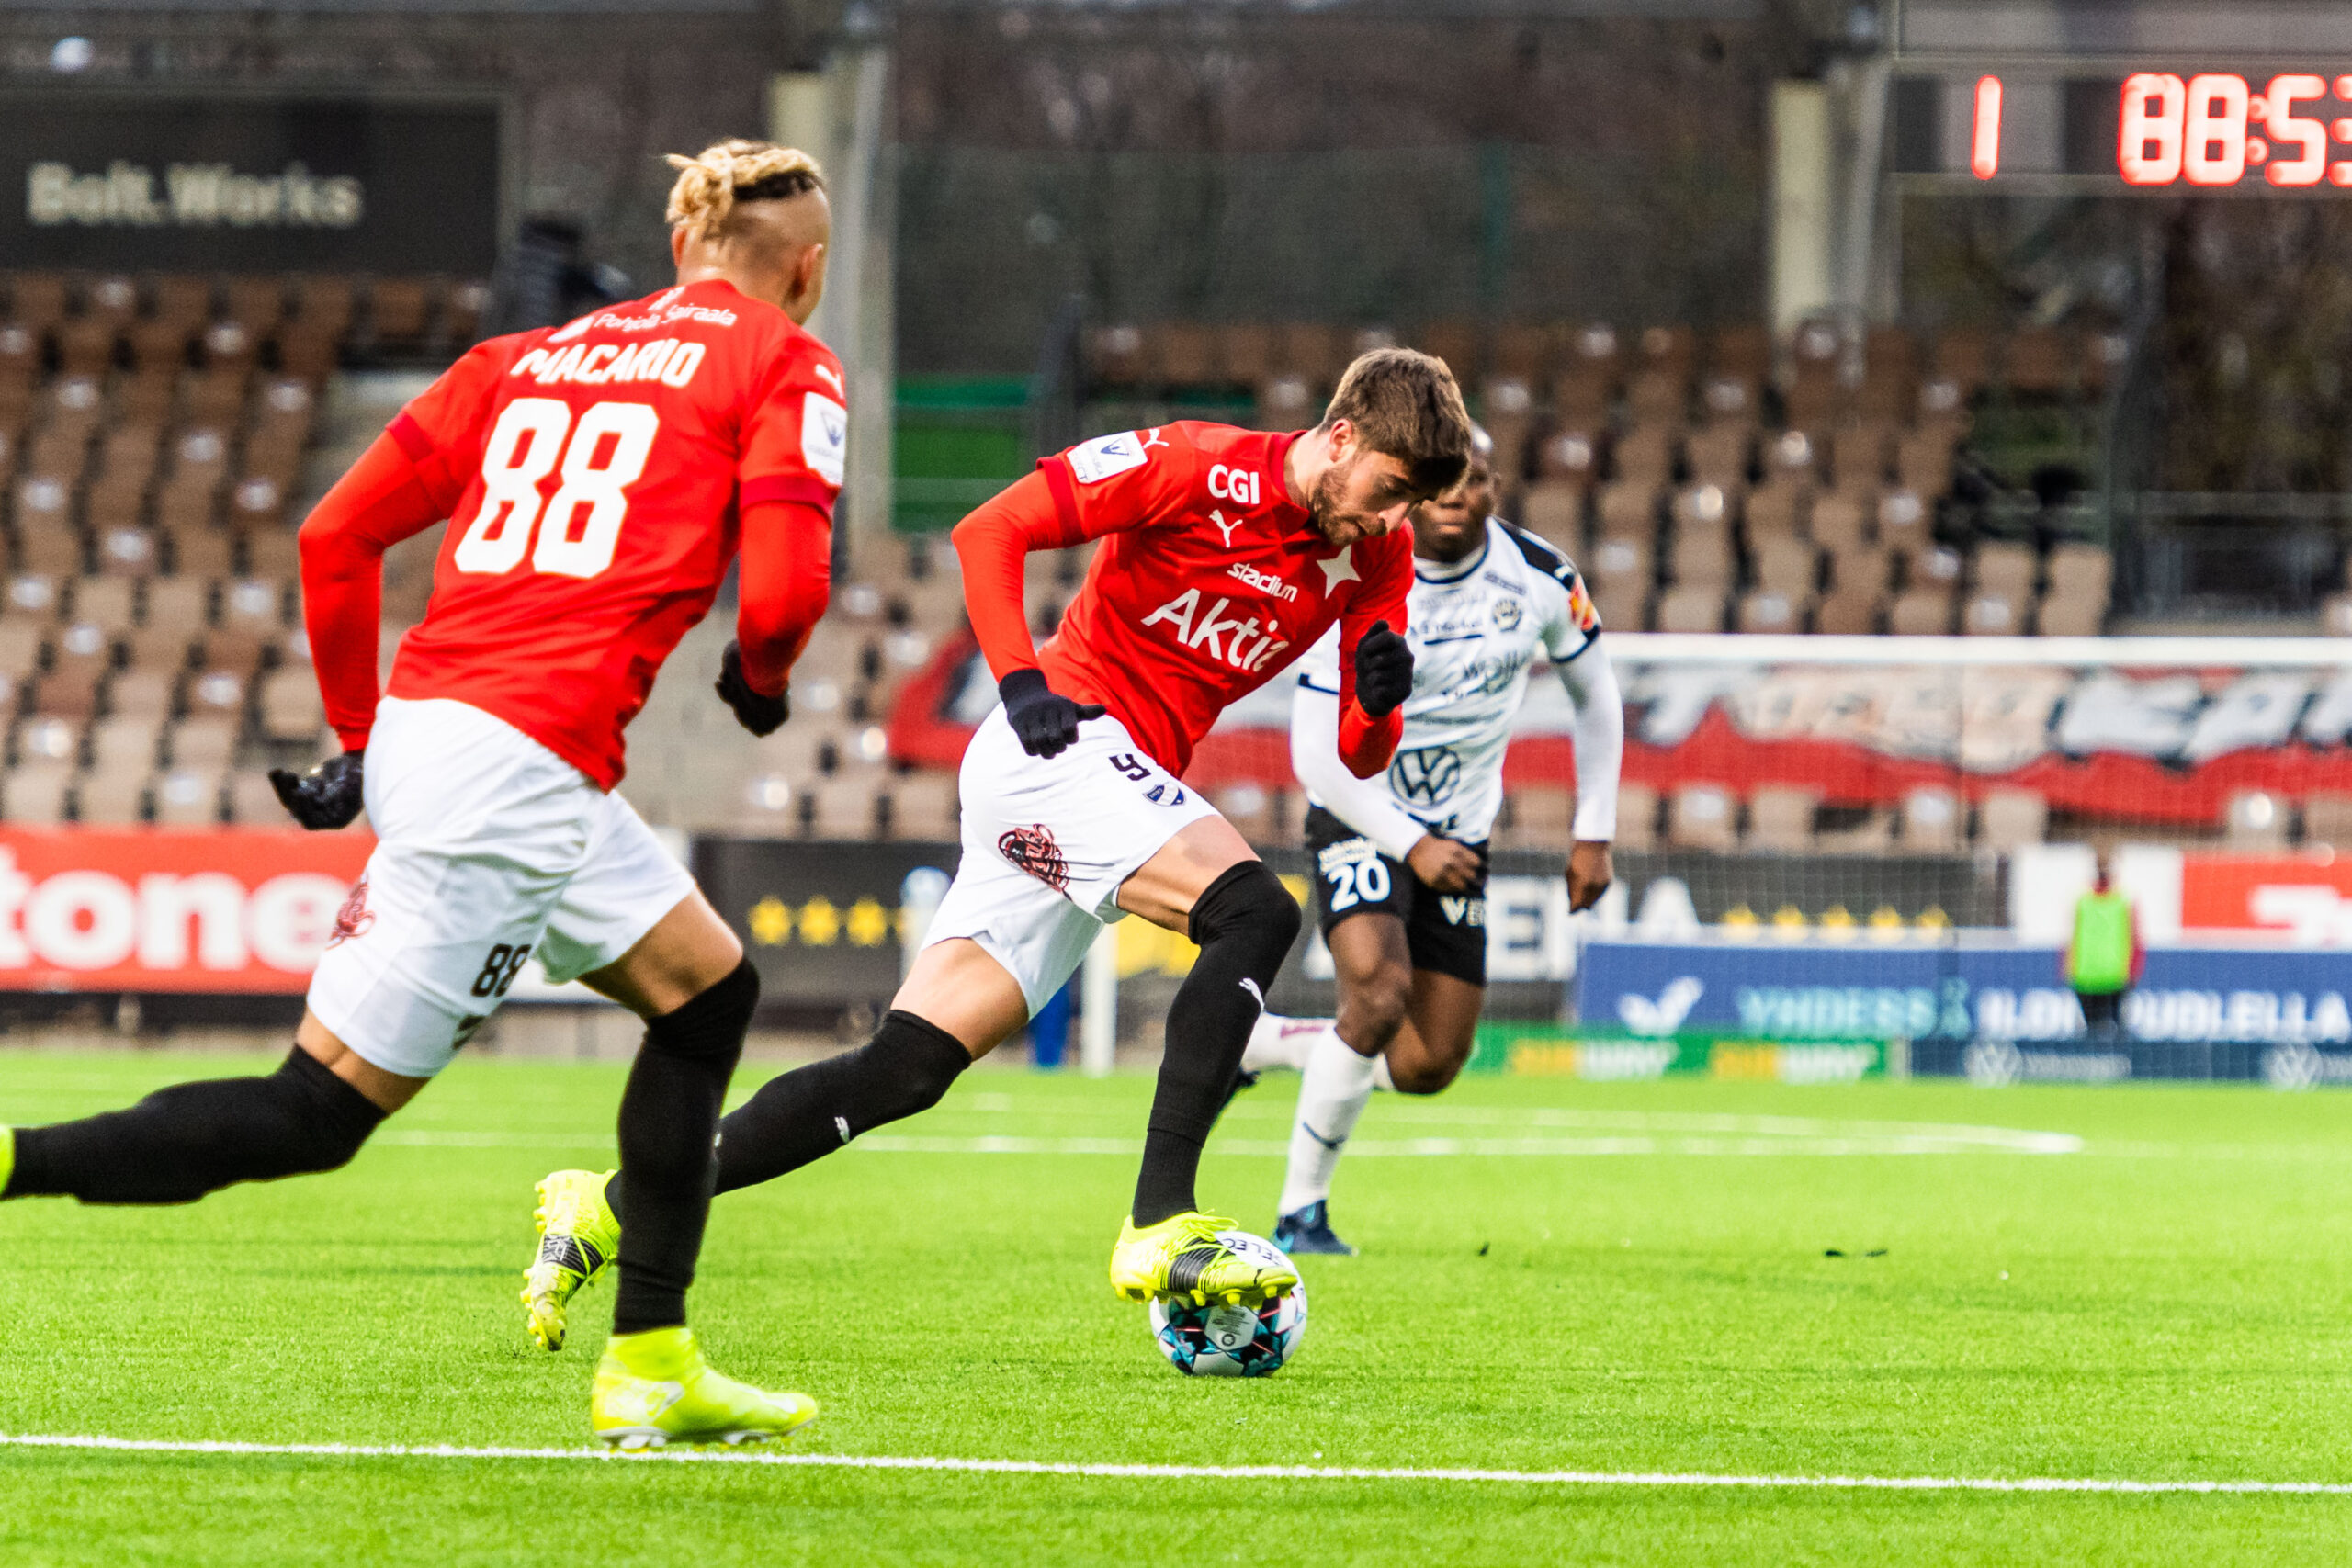 Syyskuun ensimmäinen ottelu Valkeakoskella – HIFK matkustaa Hakan vieraaksi perjantaina